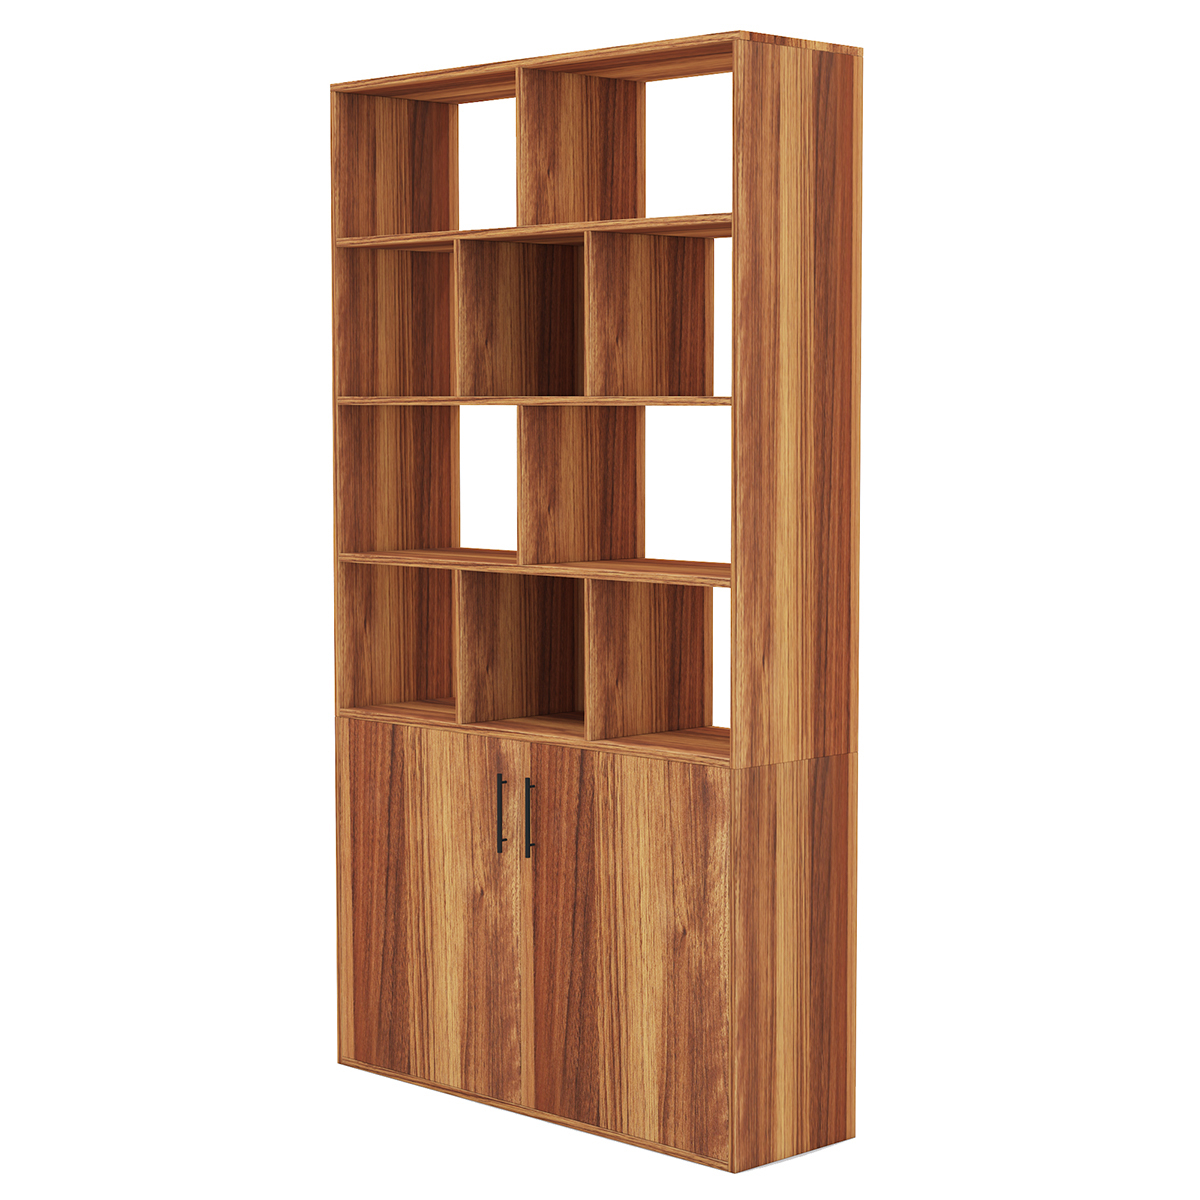 BlackWhiteOak-Dark-CherryWalnut-Wooden-Bookcase-Storage-Bookcase-with-Door-Storage-Finishing-Bookcas-1909997-11